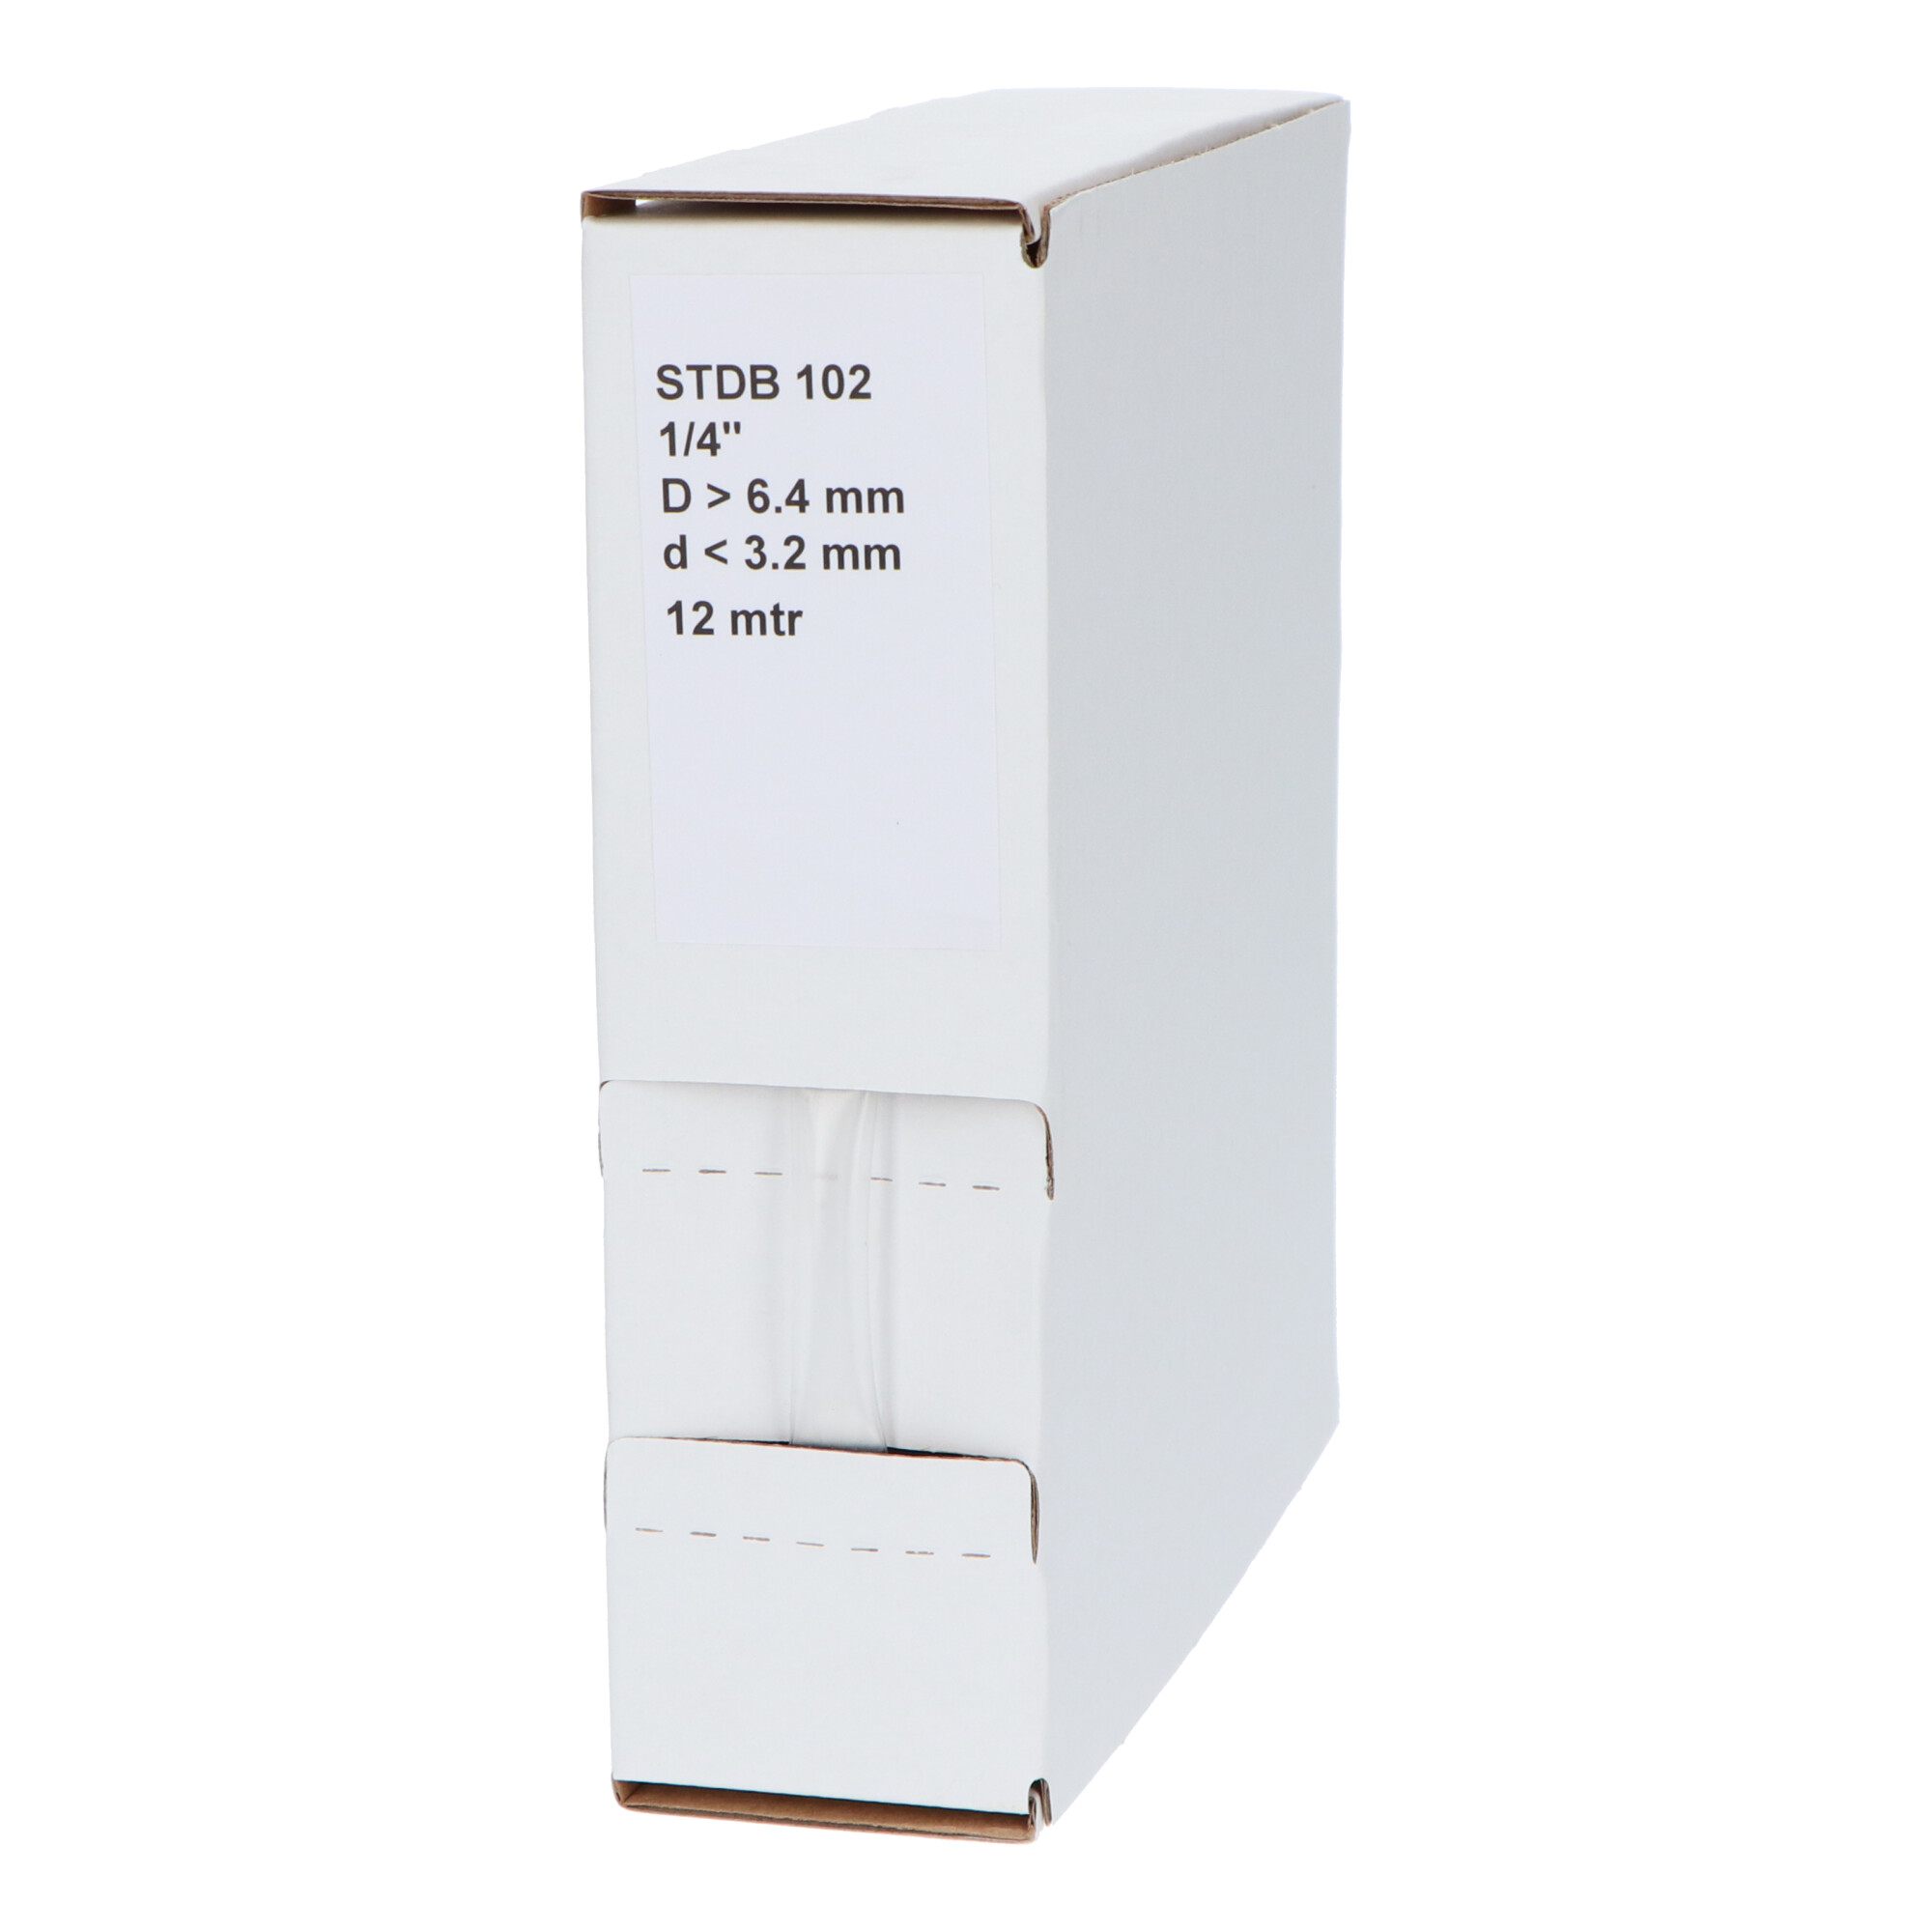 29-22003210G STDB 102 Krimpkous STDB 102 | 2:1 in dispenser box